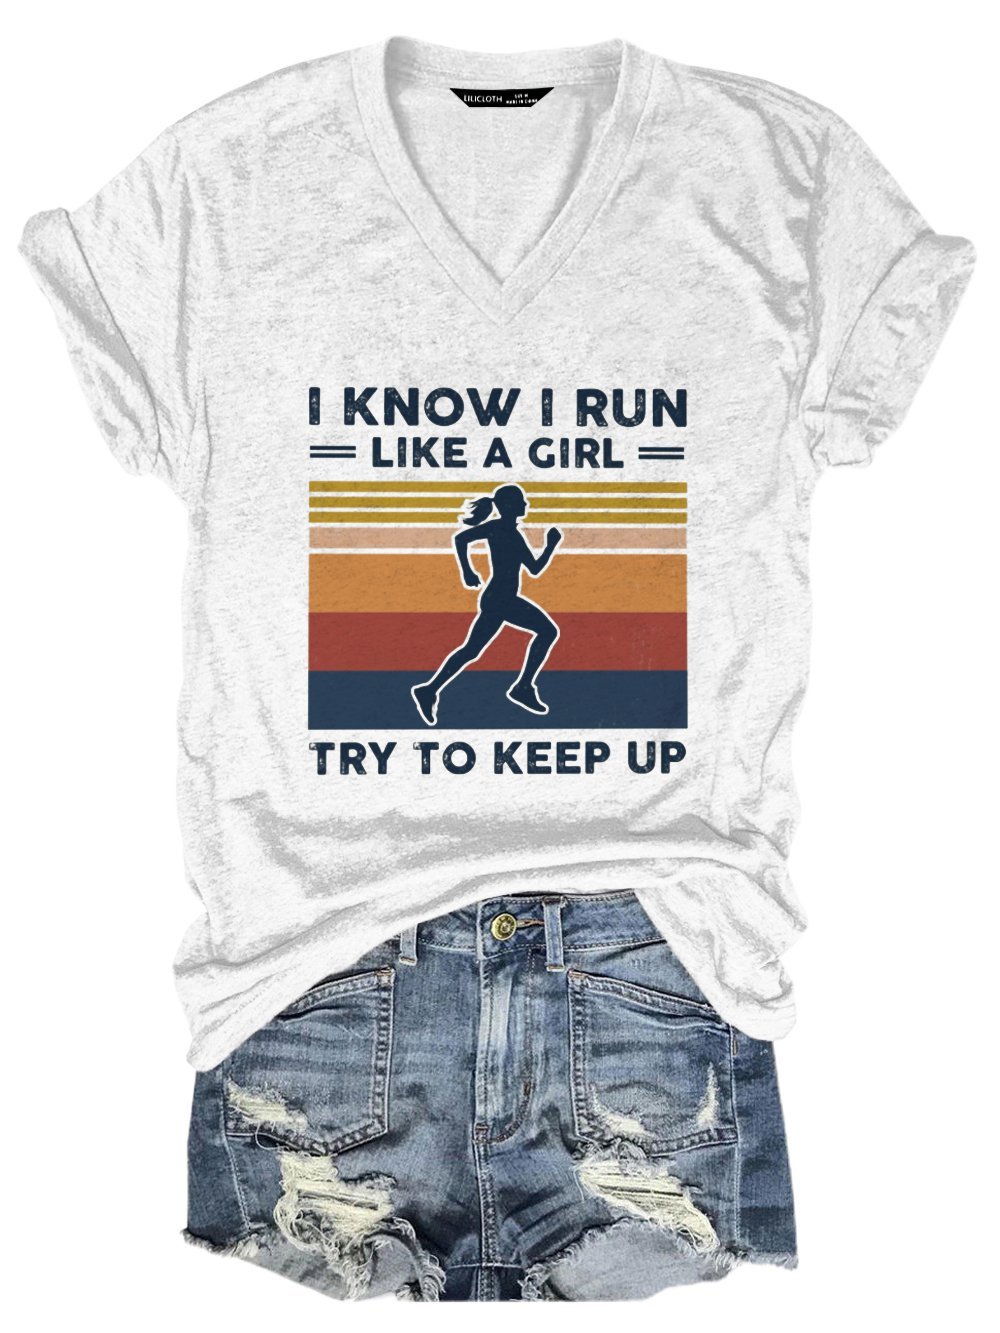 I KNOW I RUN LIKE A GIRL TRY TO KEEP UP Shirt